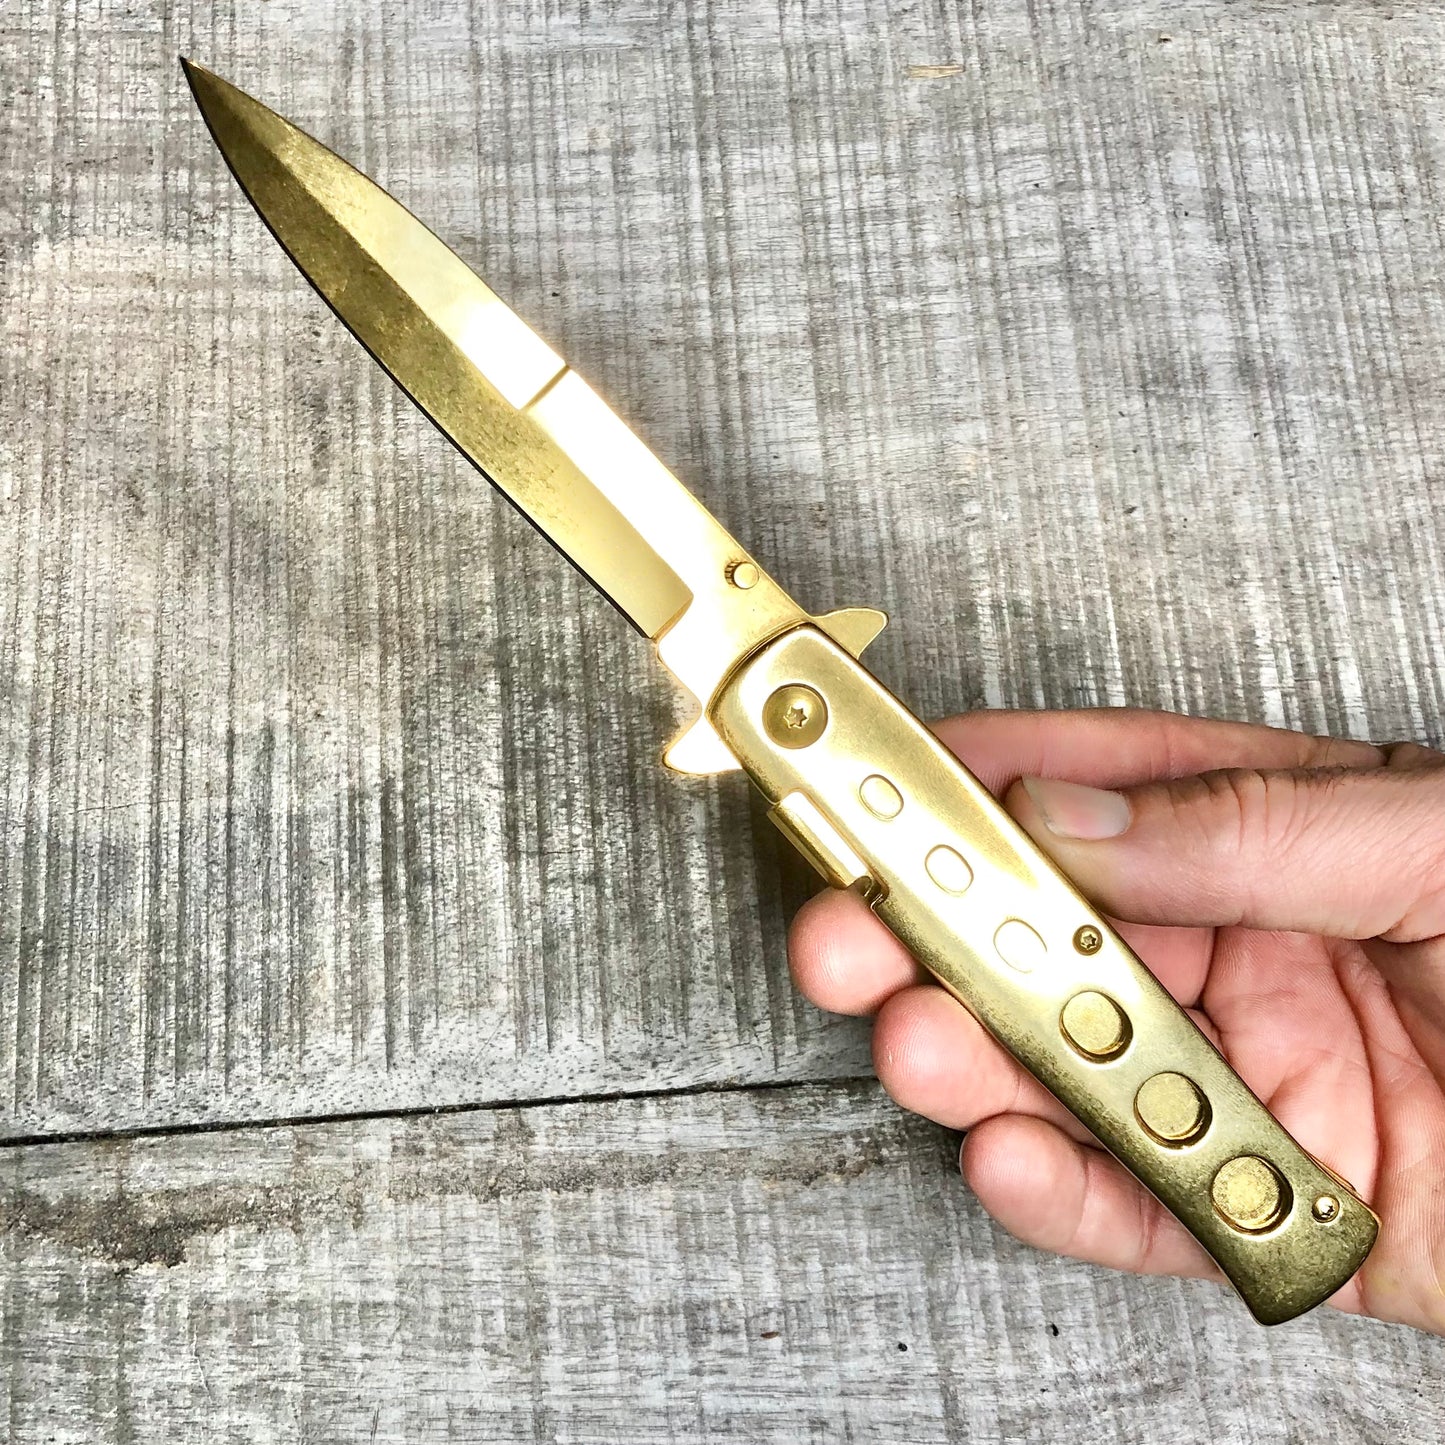 The GODFATHER Gold folding pocket knife